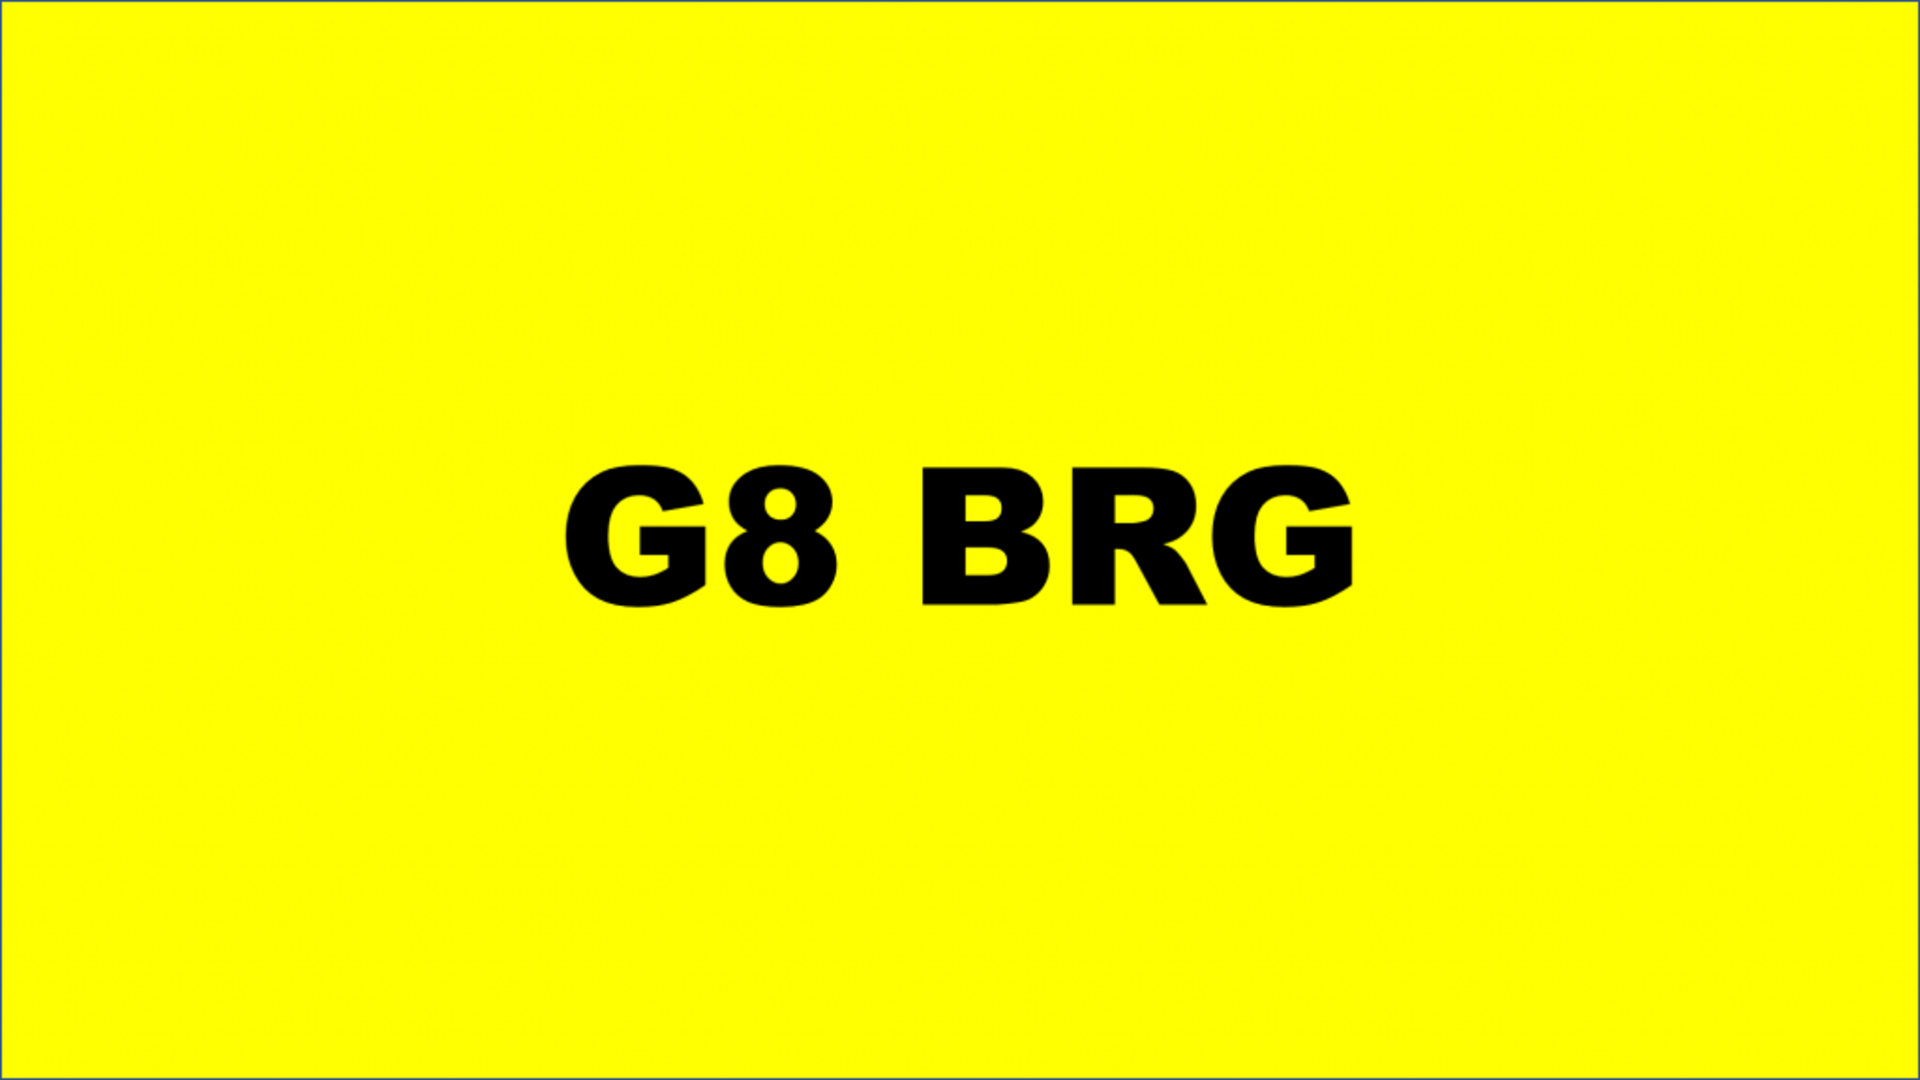 REGISTRATION - G8 BRG